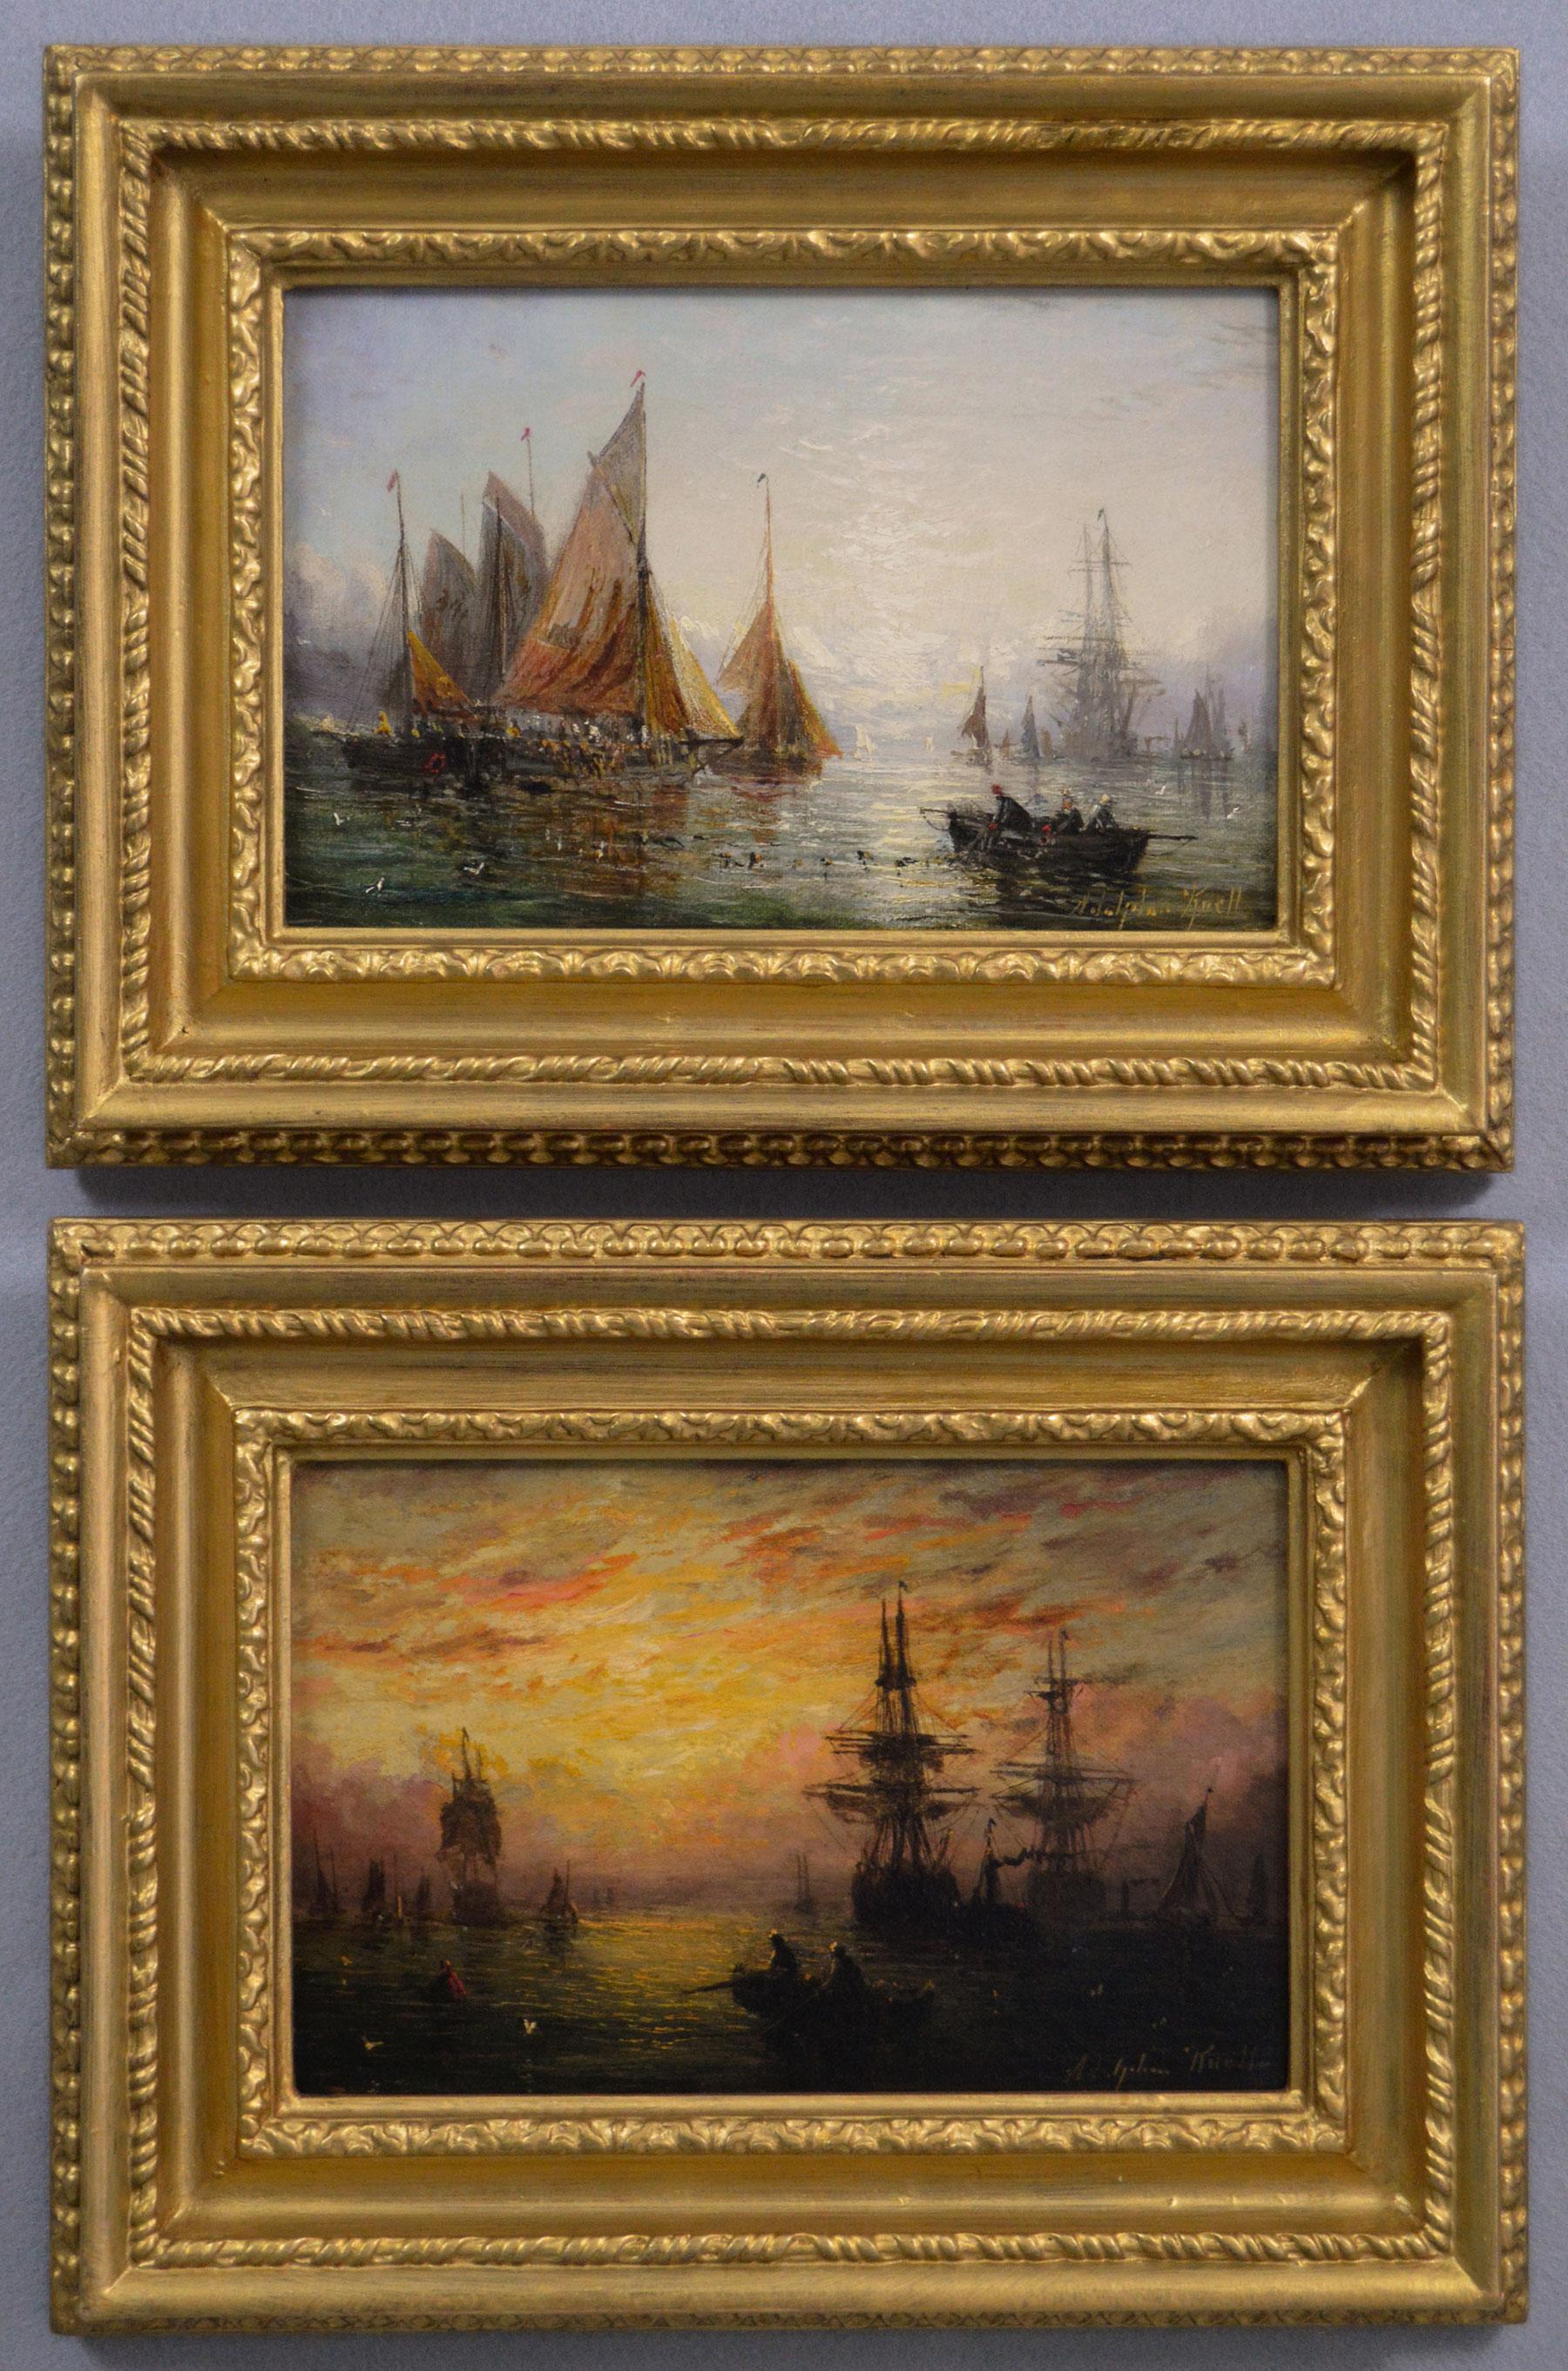 Landscape Painting Adolphus Knell - Paire de peintures à l'huile de paysages marins du 19e siècle représentant des navires à l'ancre 